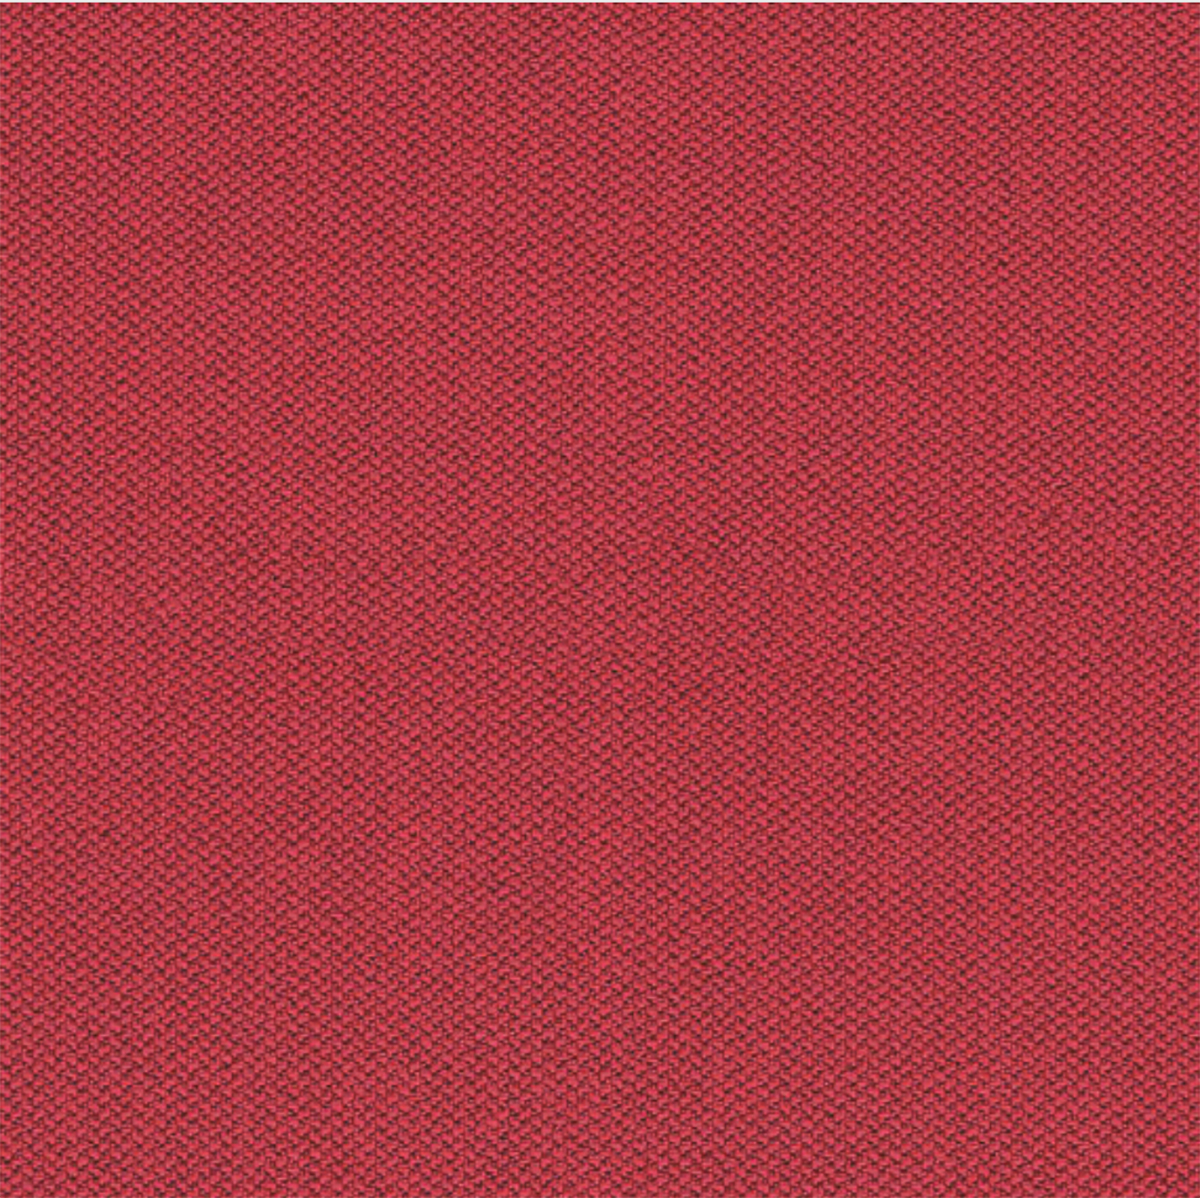 Camira Red Era Fabric [+$130.00]